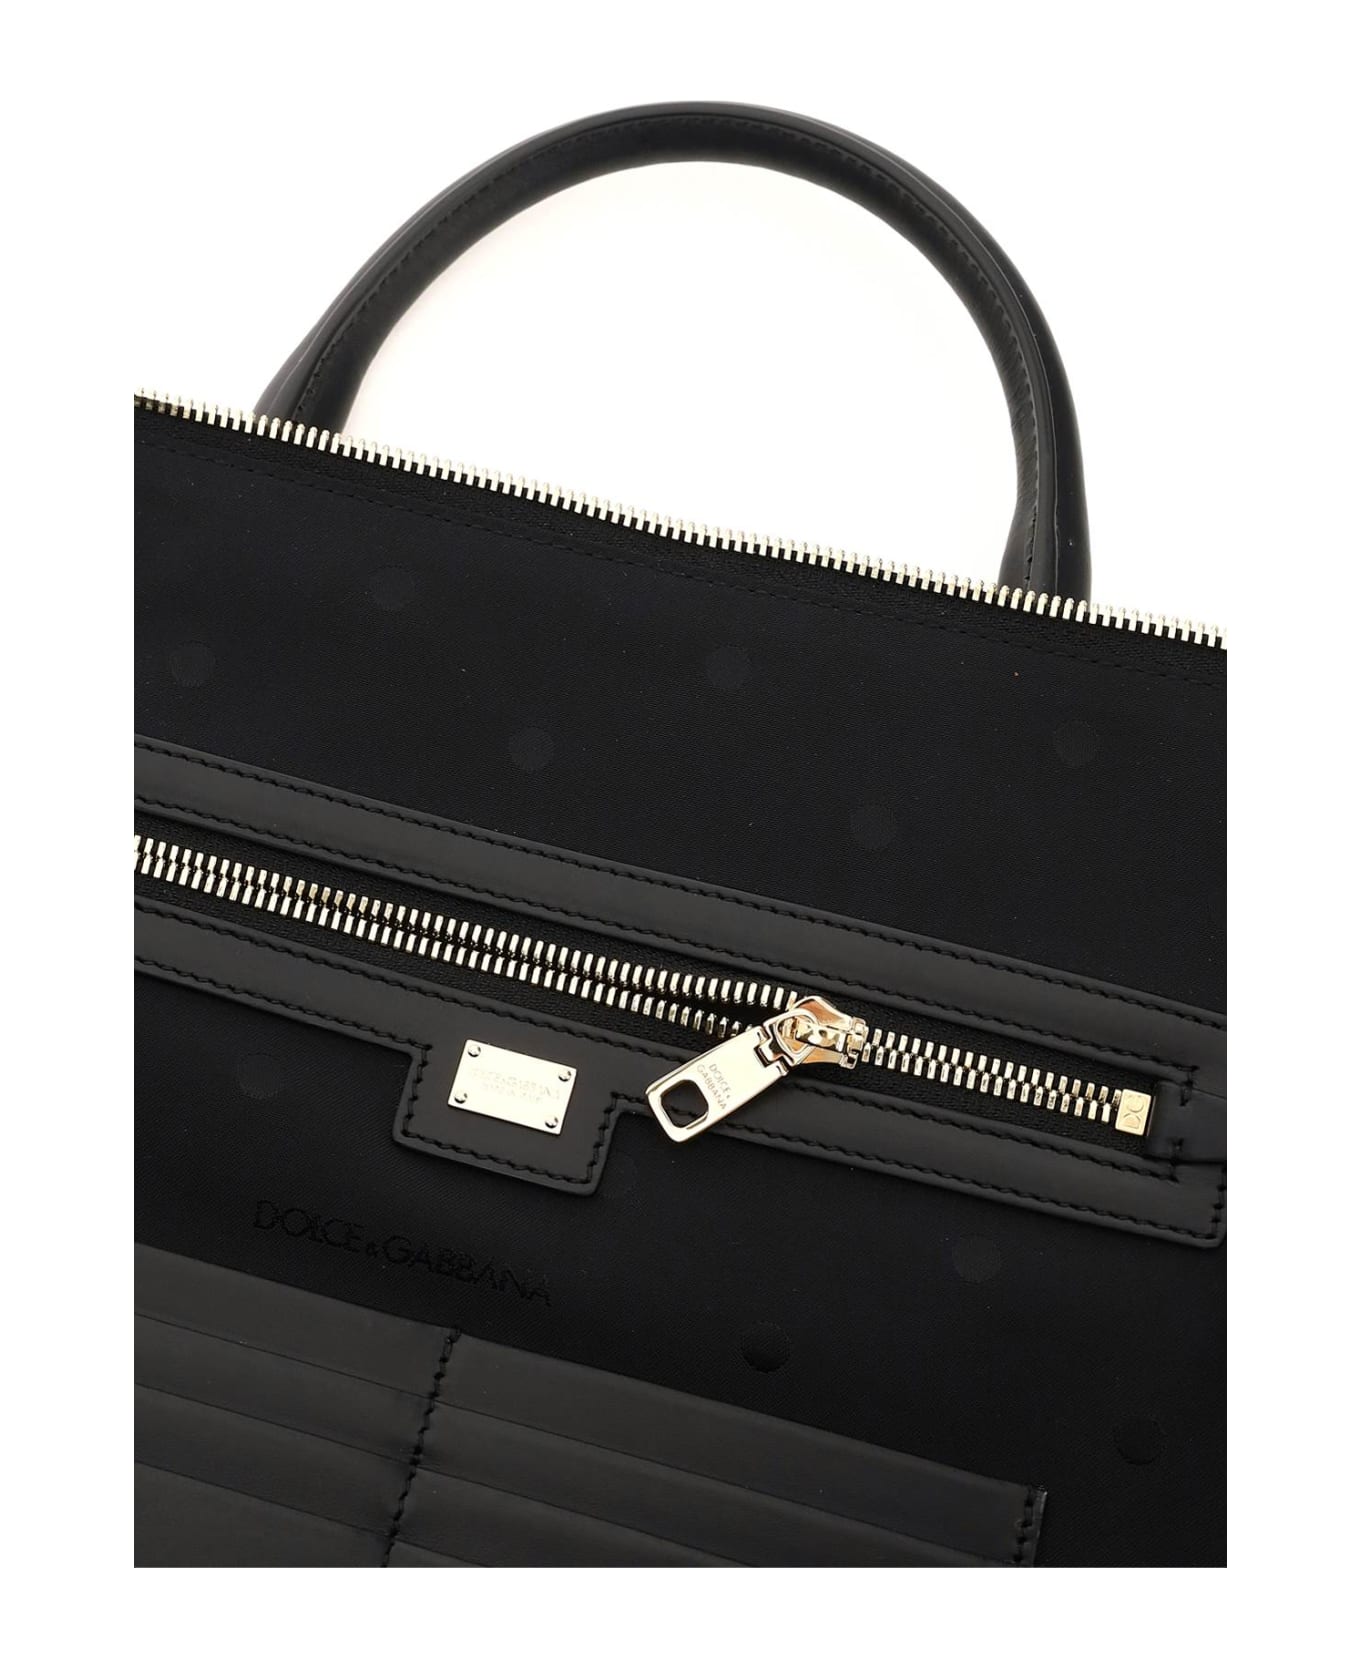 Dolce & Gabbana Leather Monreale Briefcase - Nero